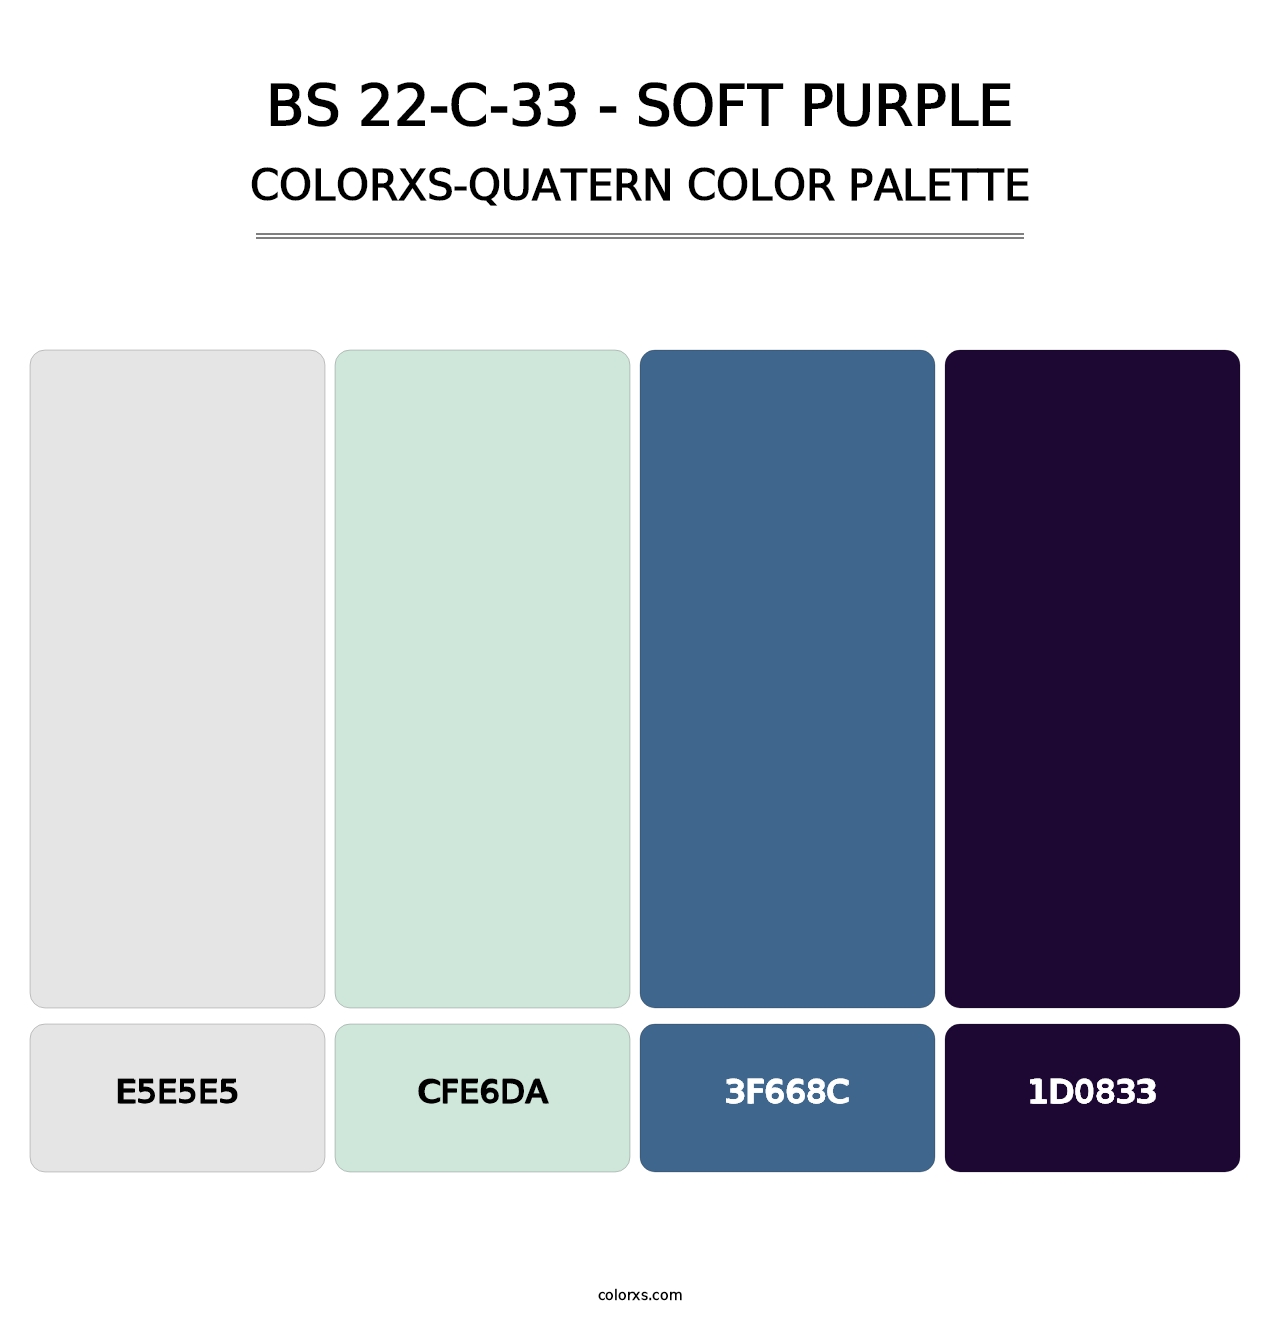 BS 22-C-33 - Soft Purple - Colorxs Quatern Palette